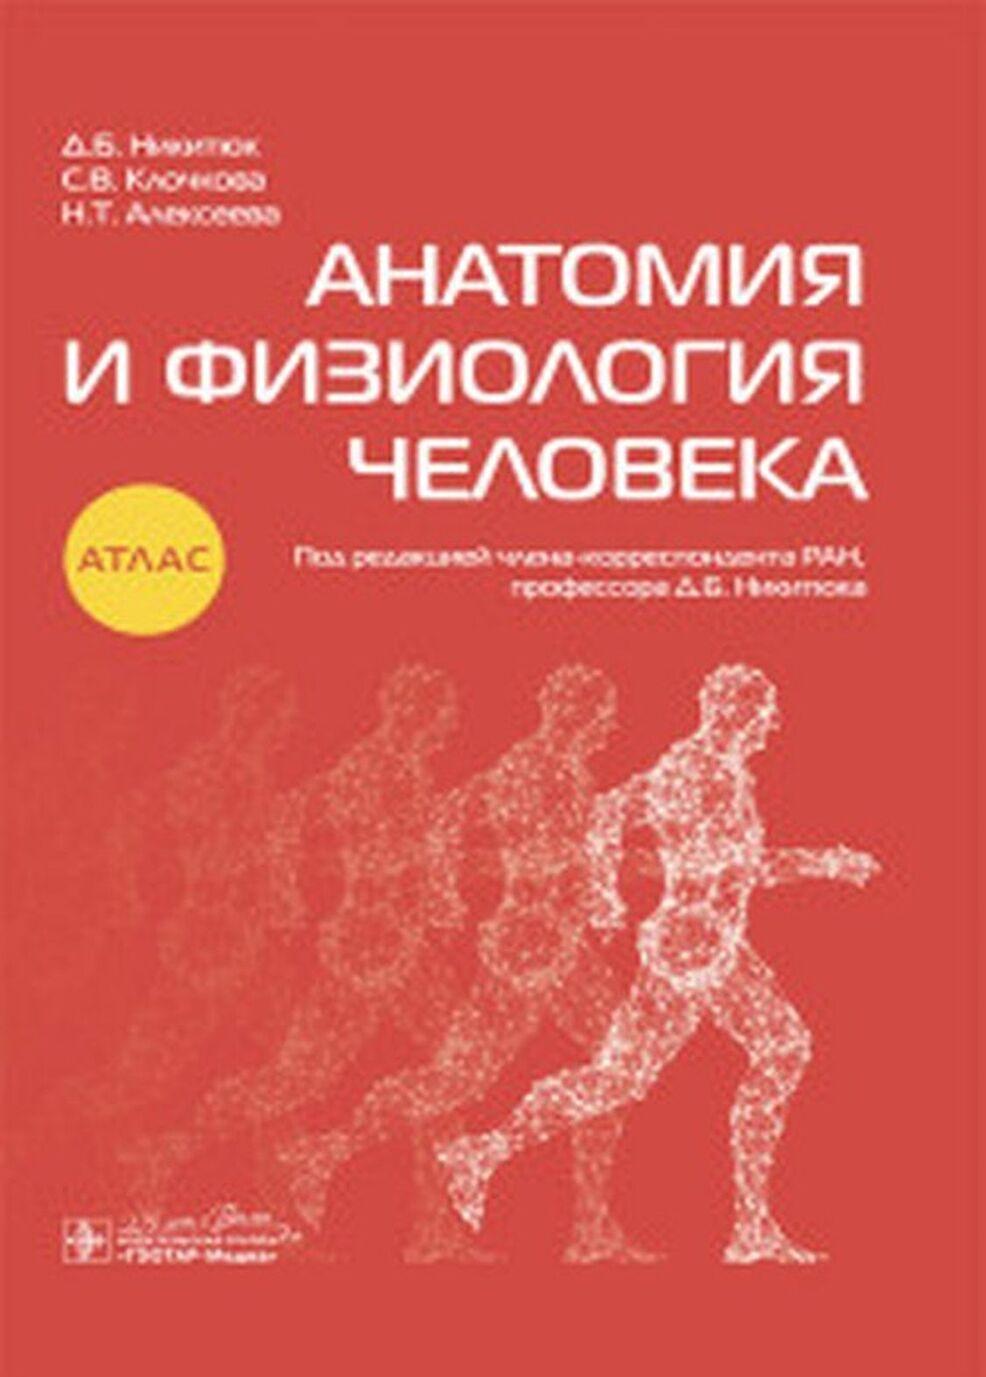 Kniha Анатомия и физиология человека. Атлас С.В. Клочкова